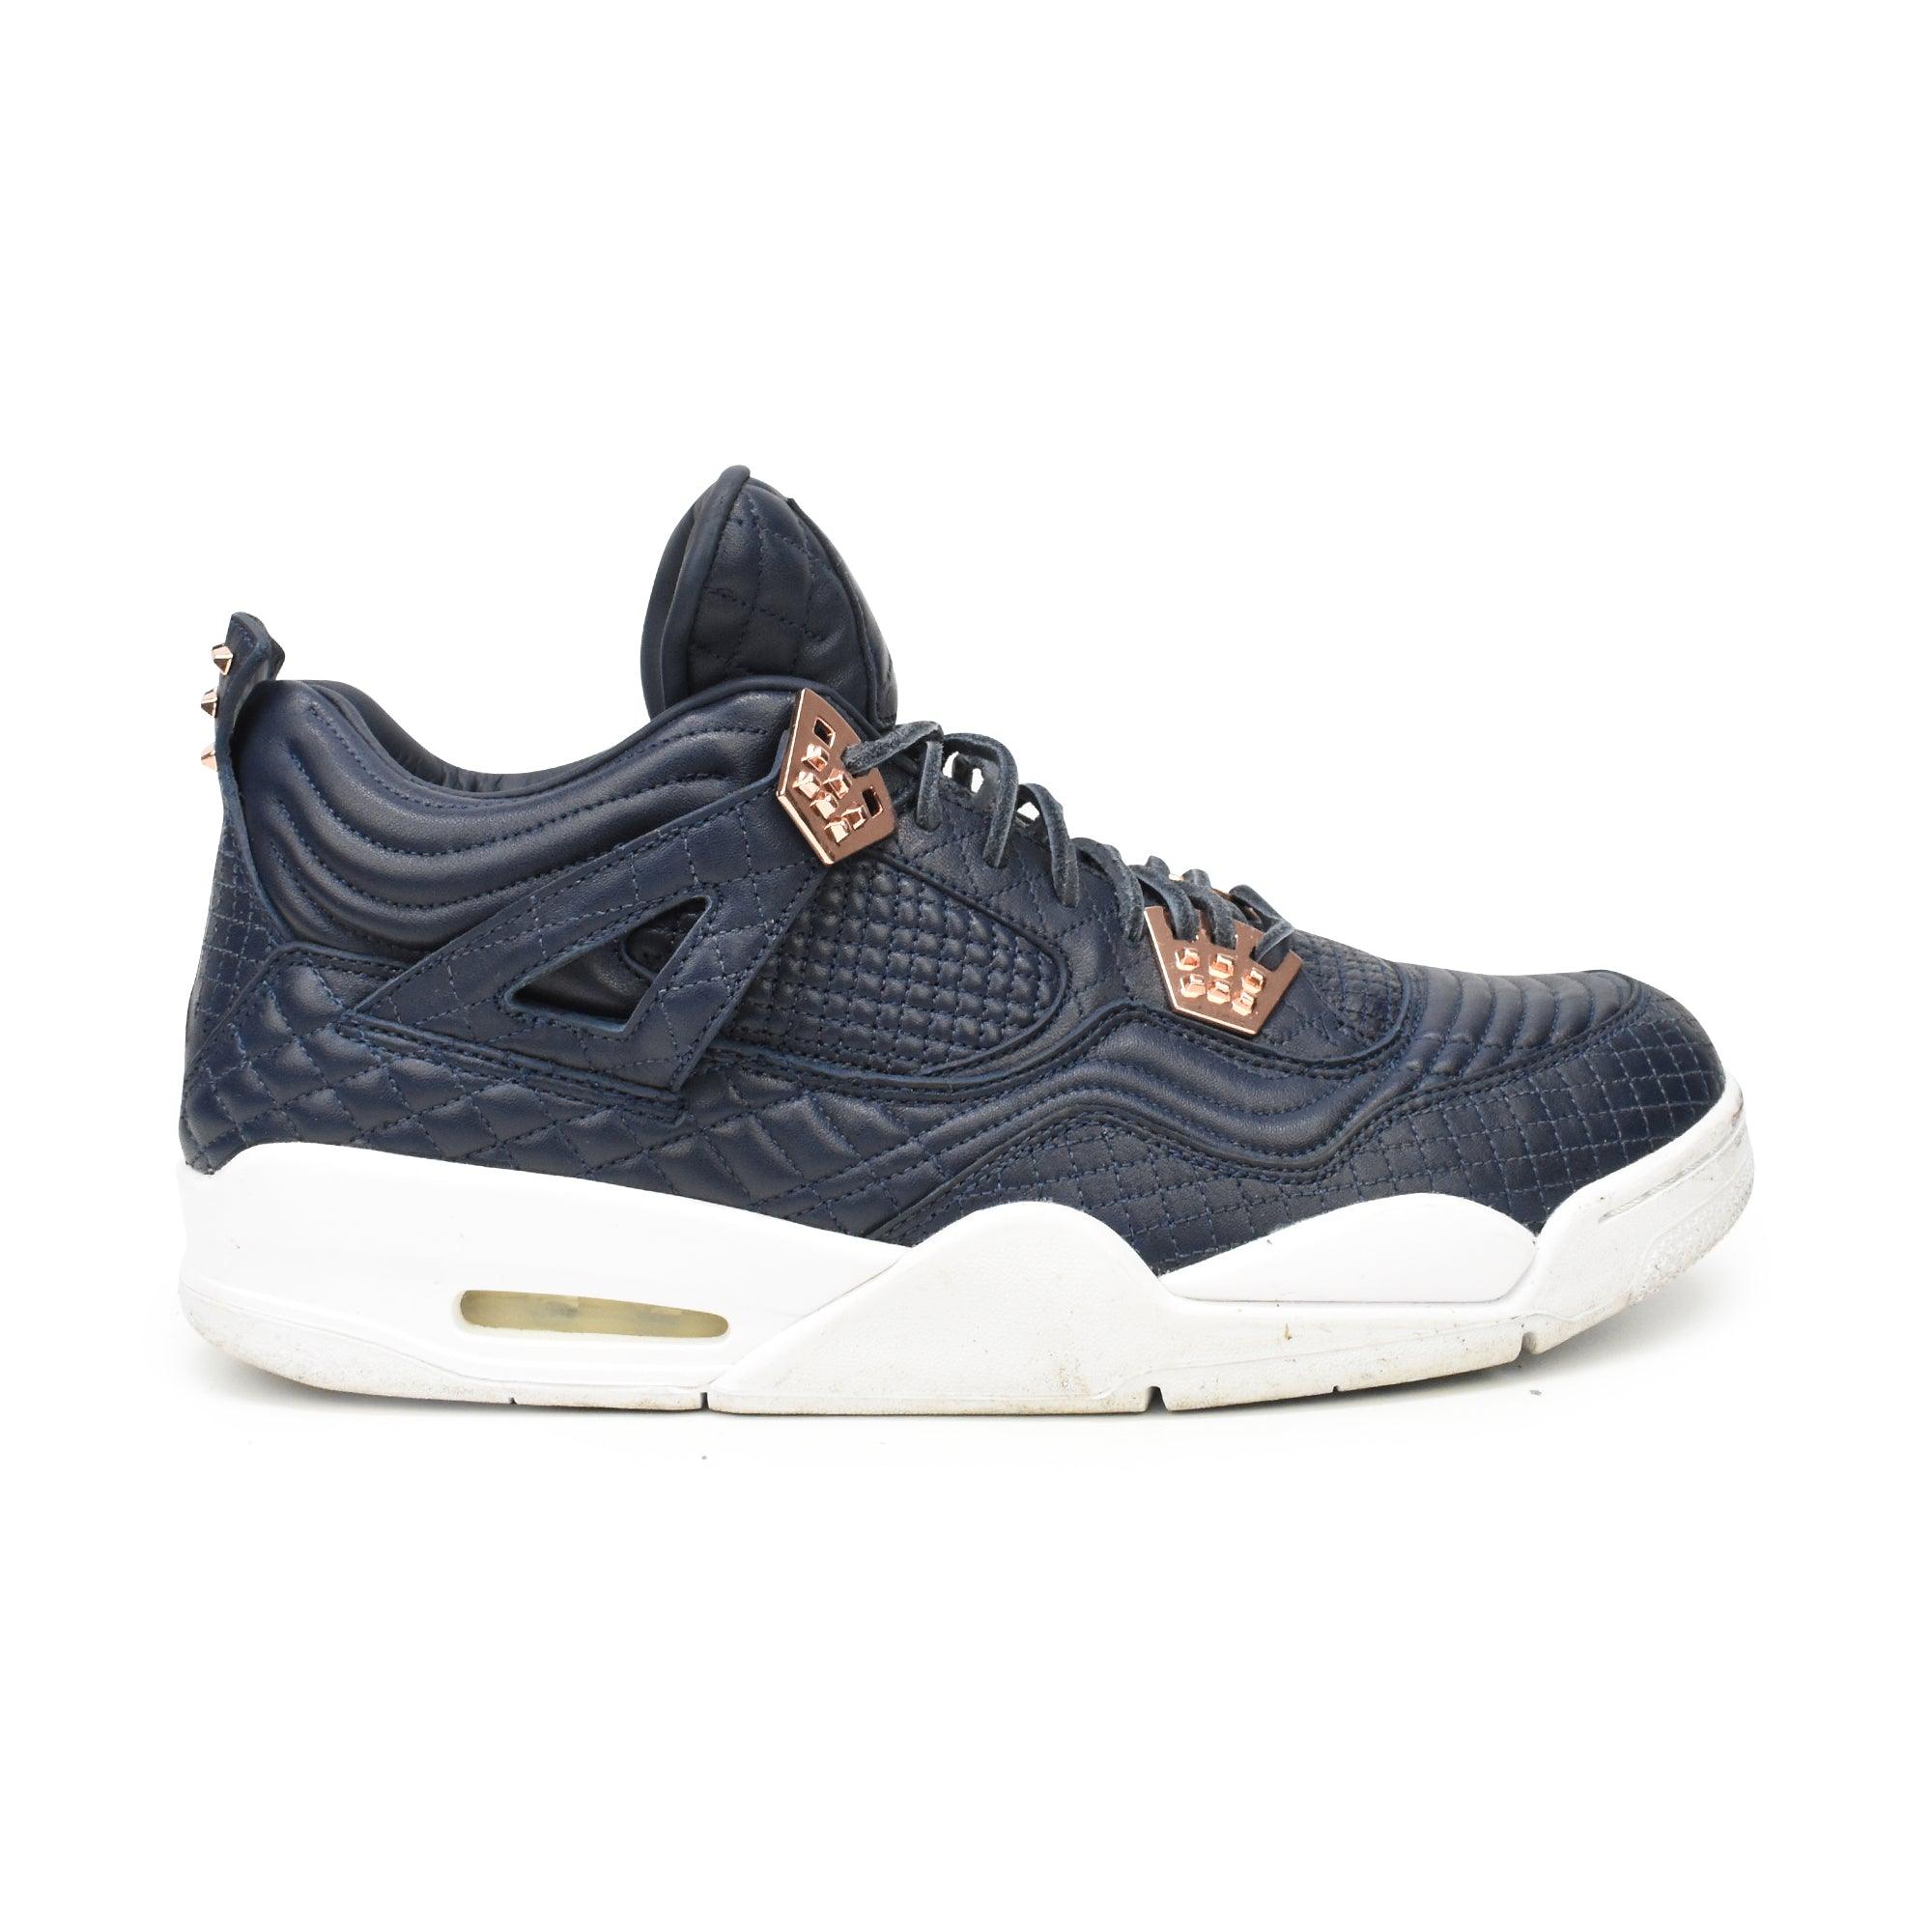 Air Jordan 'Jordan 4 Retro Premium' Sneakers - Men's 14 - Fashionably Yours